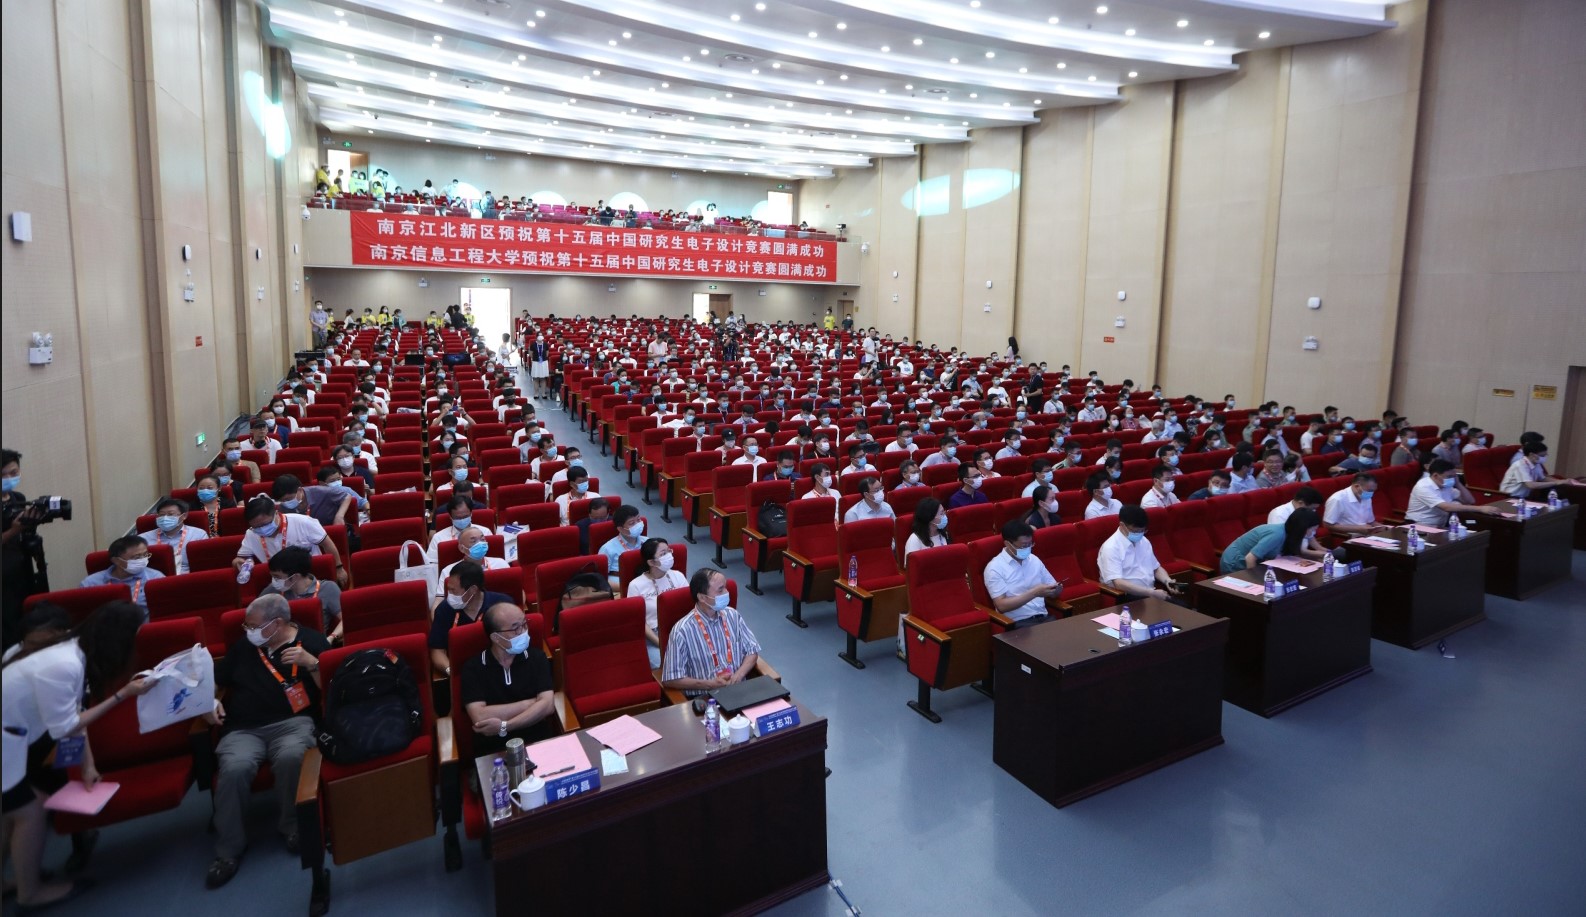 2020湖南大学在第十五届中国研究生电子设计竞赛 全国总决赛中斩获佳绩